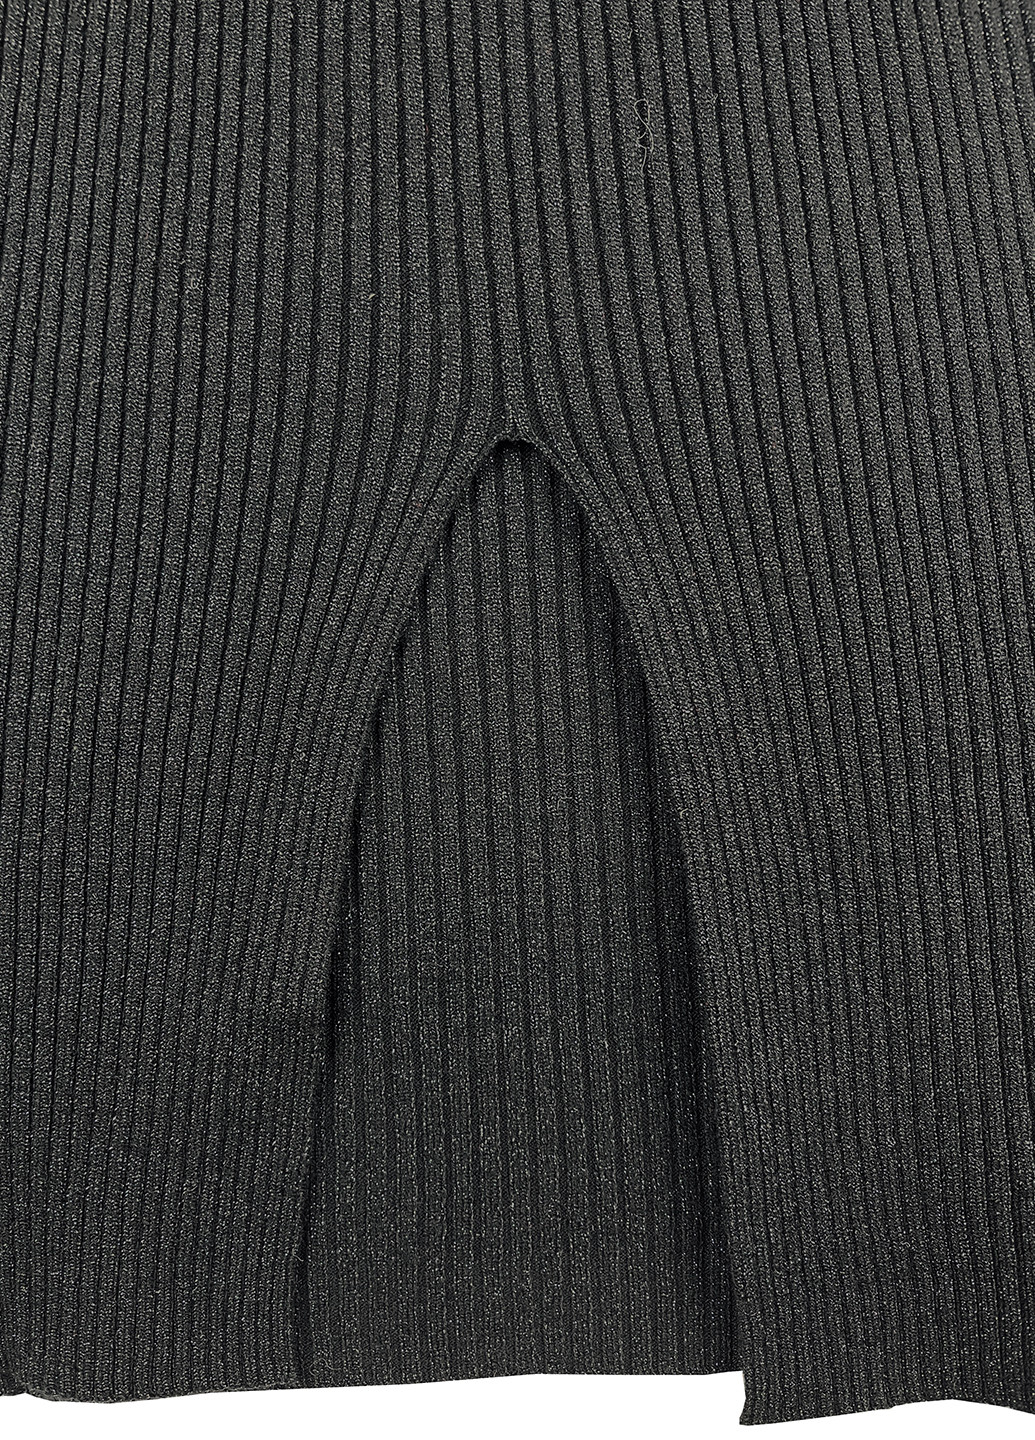 Черное кэжуал платье миди с люрексной нитью Moni&co однотонное